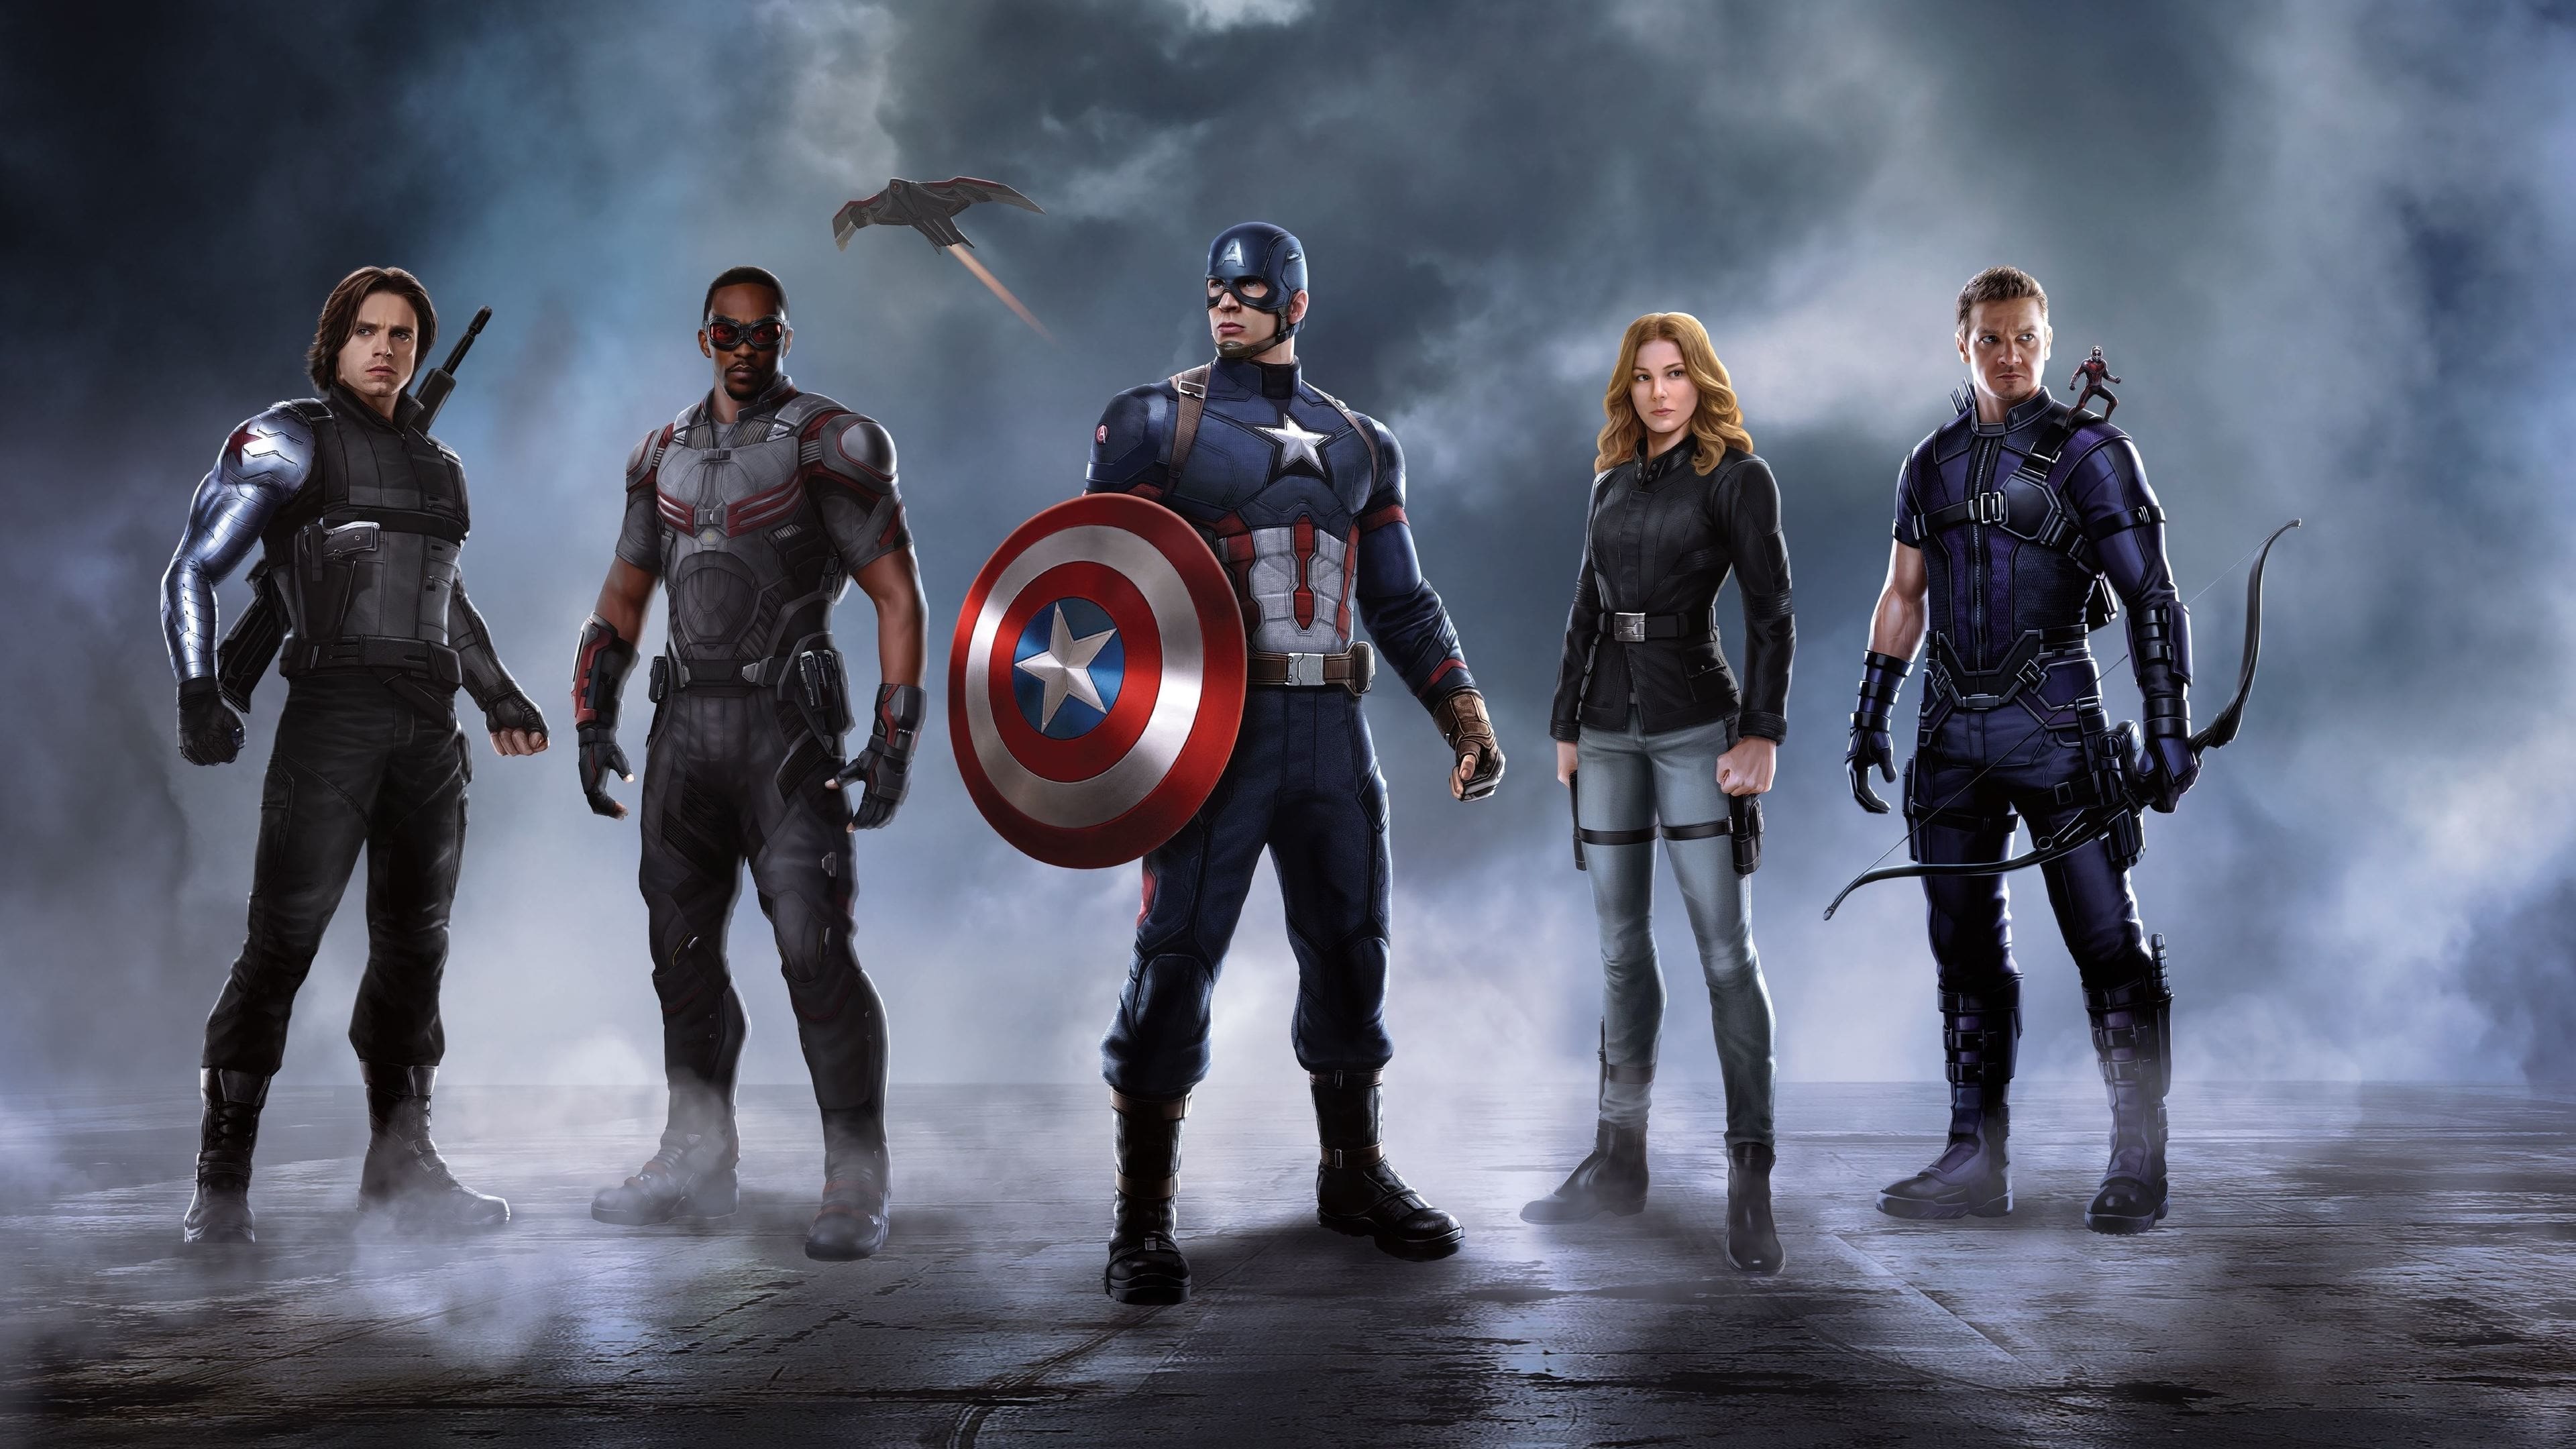 Image du film Captain America : Civil War 6tmwvbrx6cy62loikhpwumjrh6hjpg